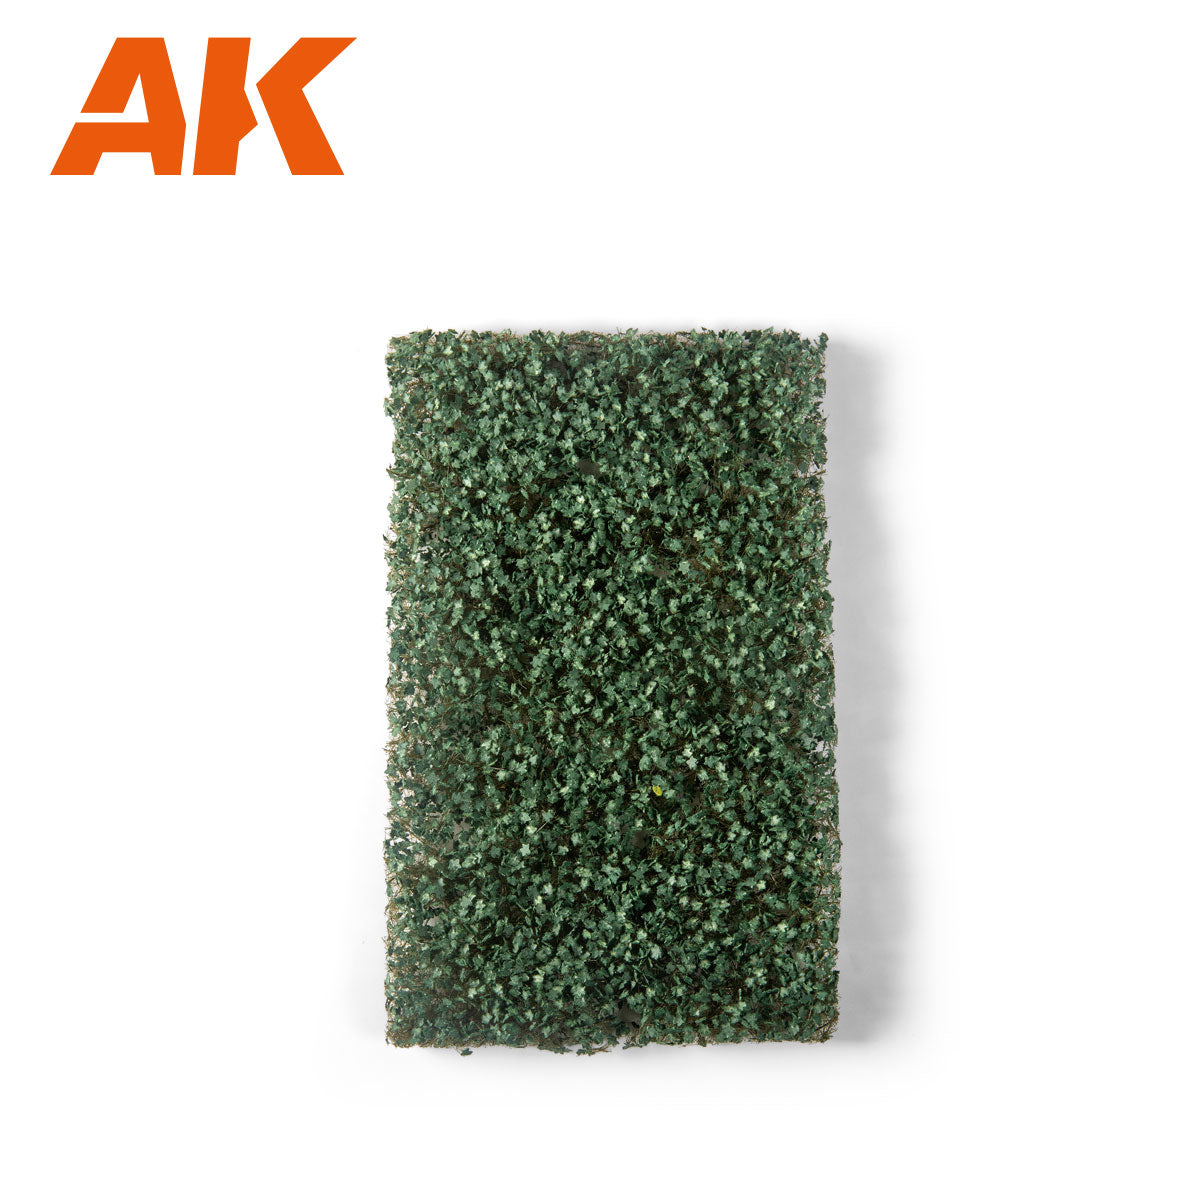 AK8234: Ivy Foliage